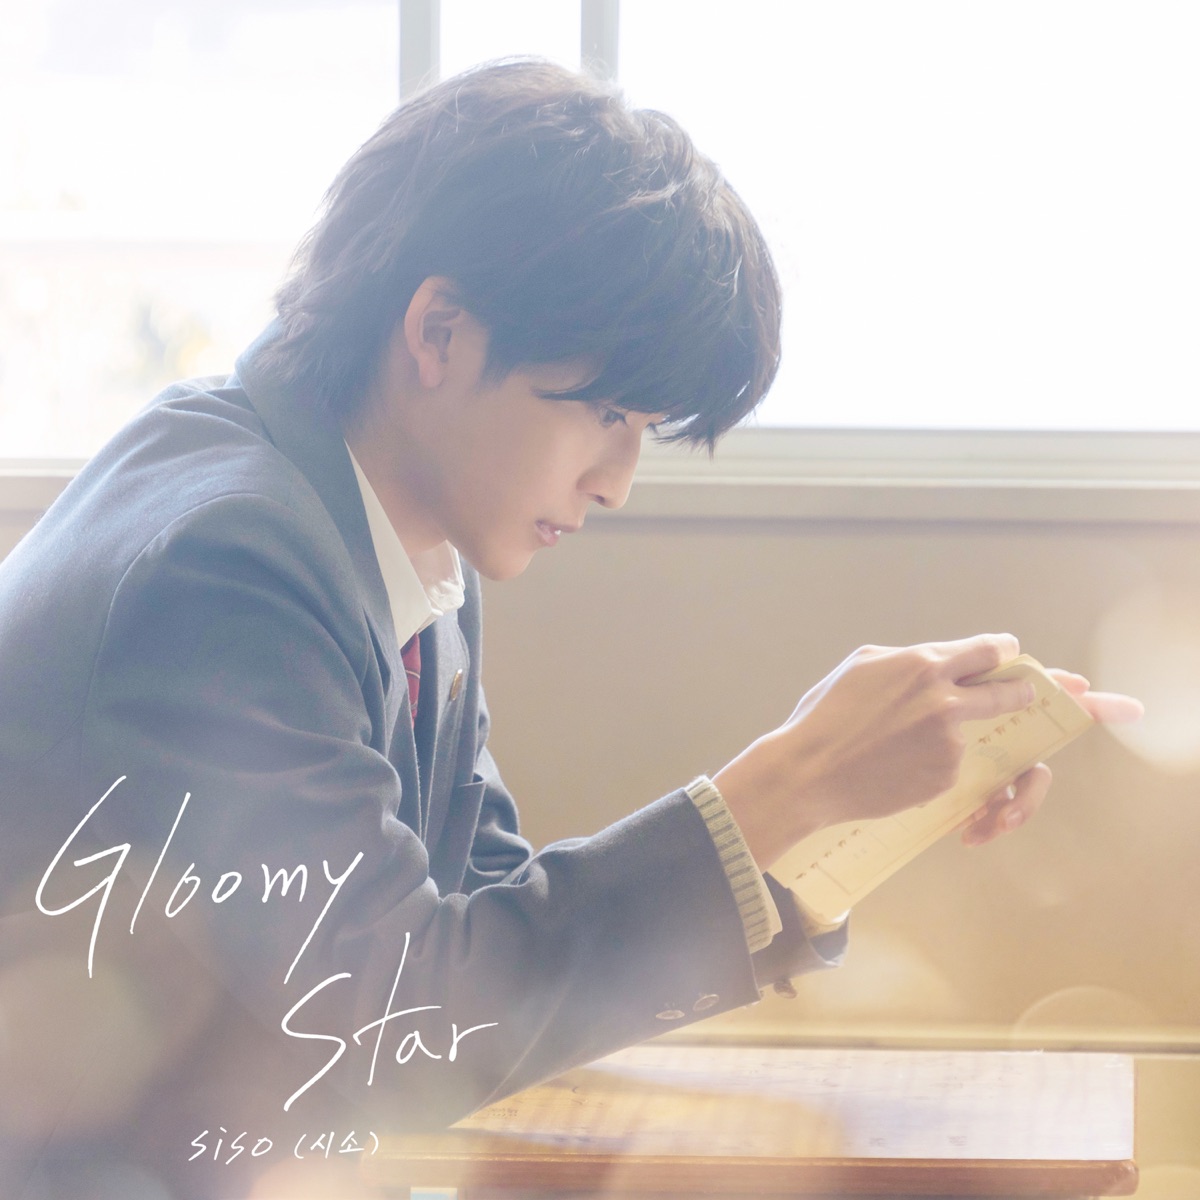 siso – Gloomy Star (Our Secret Diary) – Single